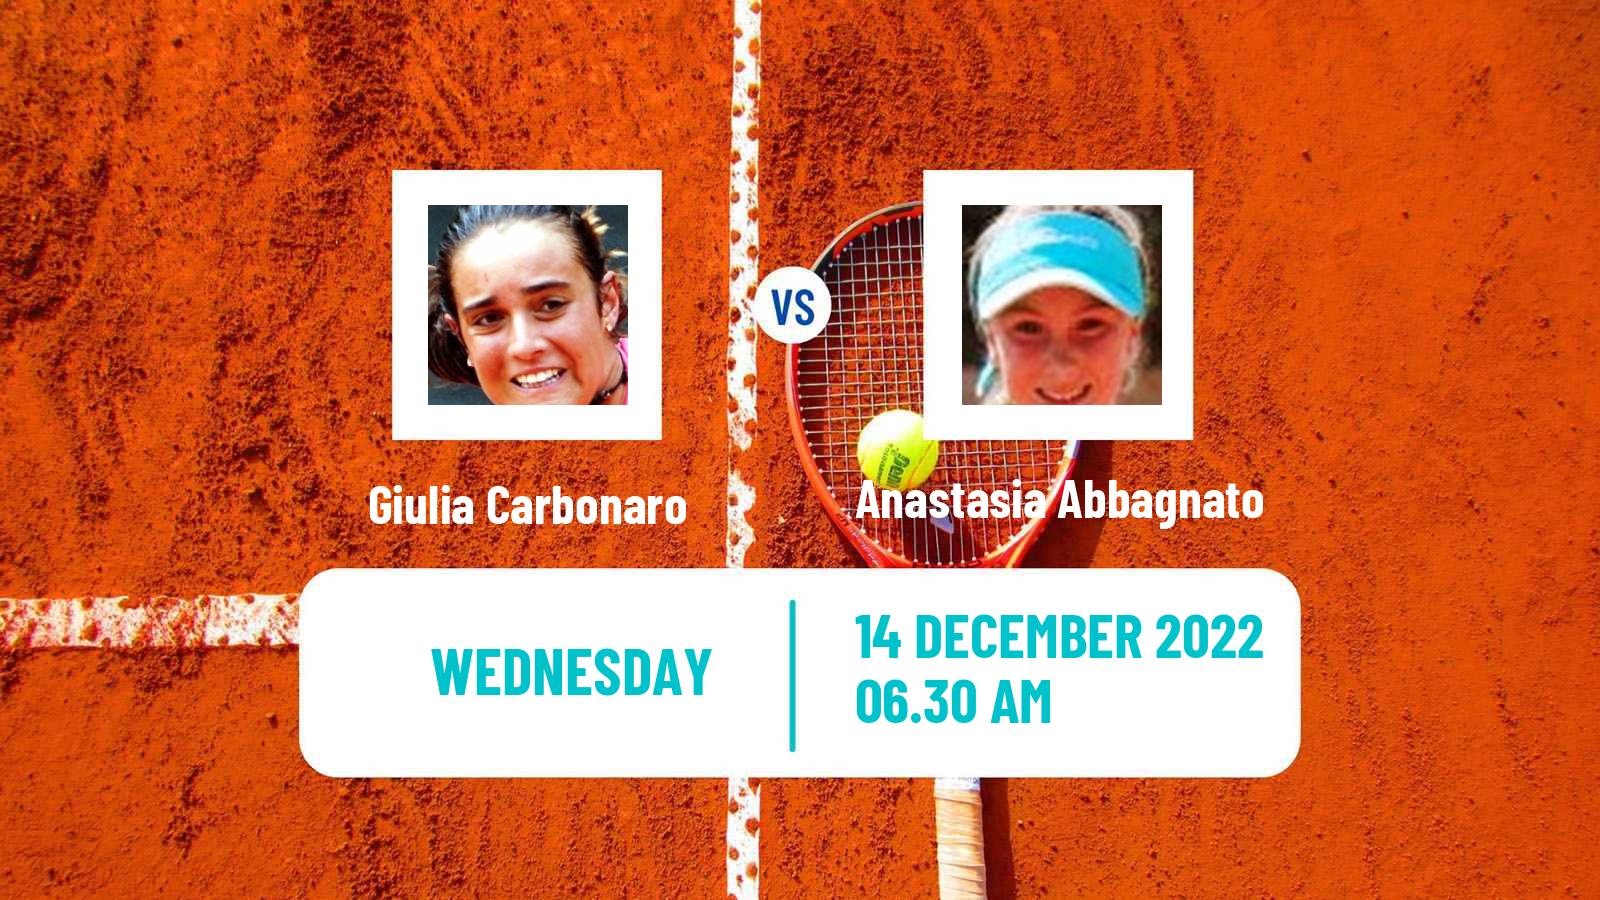 Tennis ITF Tournaments Giulia Carbonaro - Anastasia Abbagnato